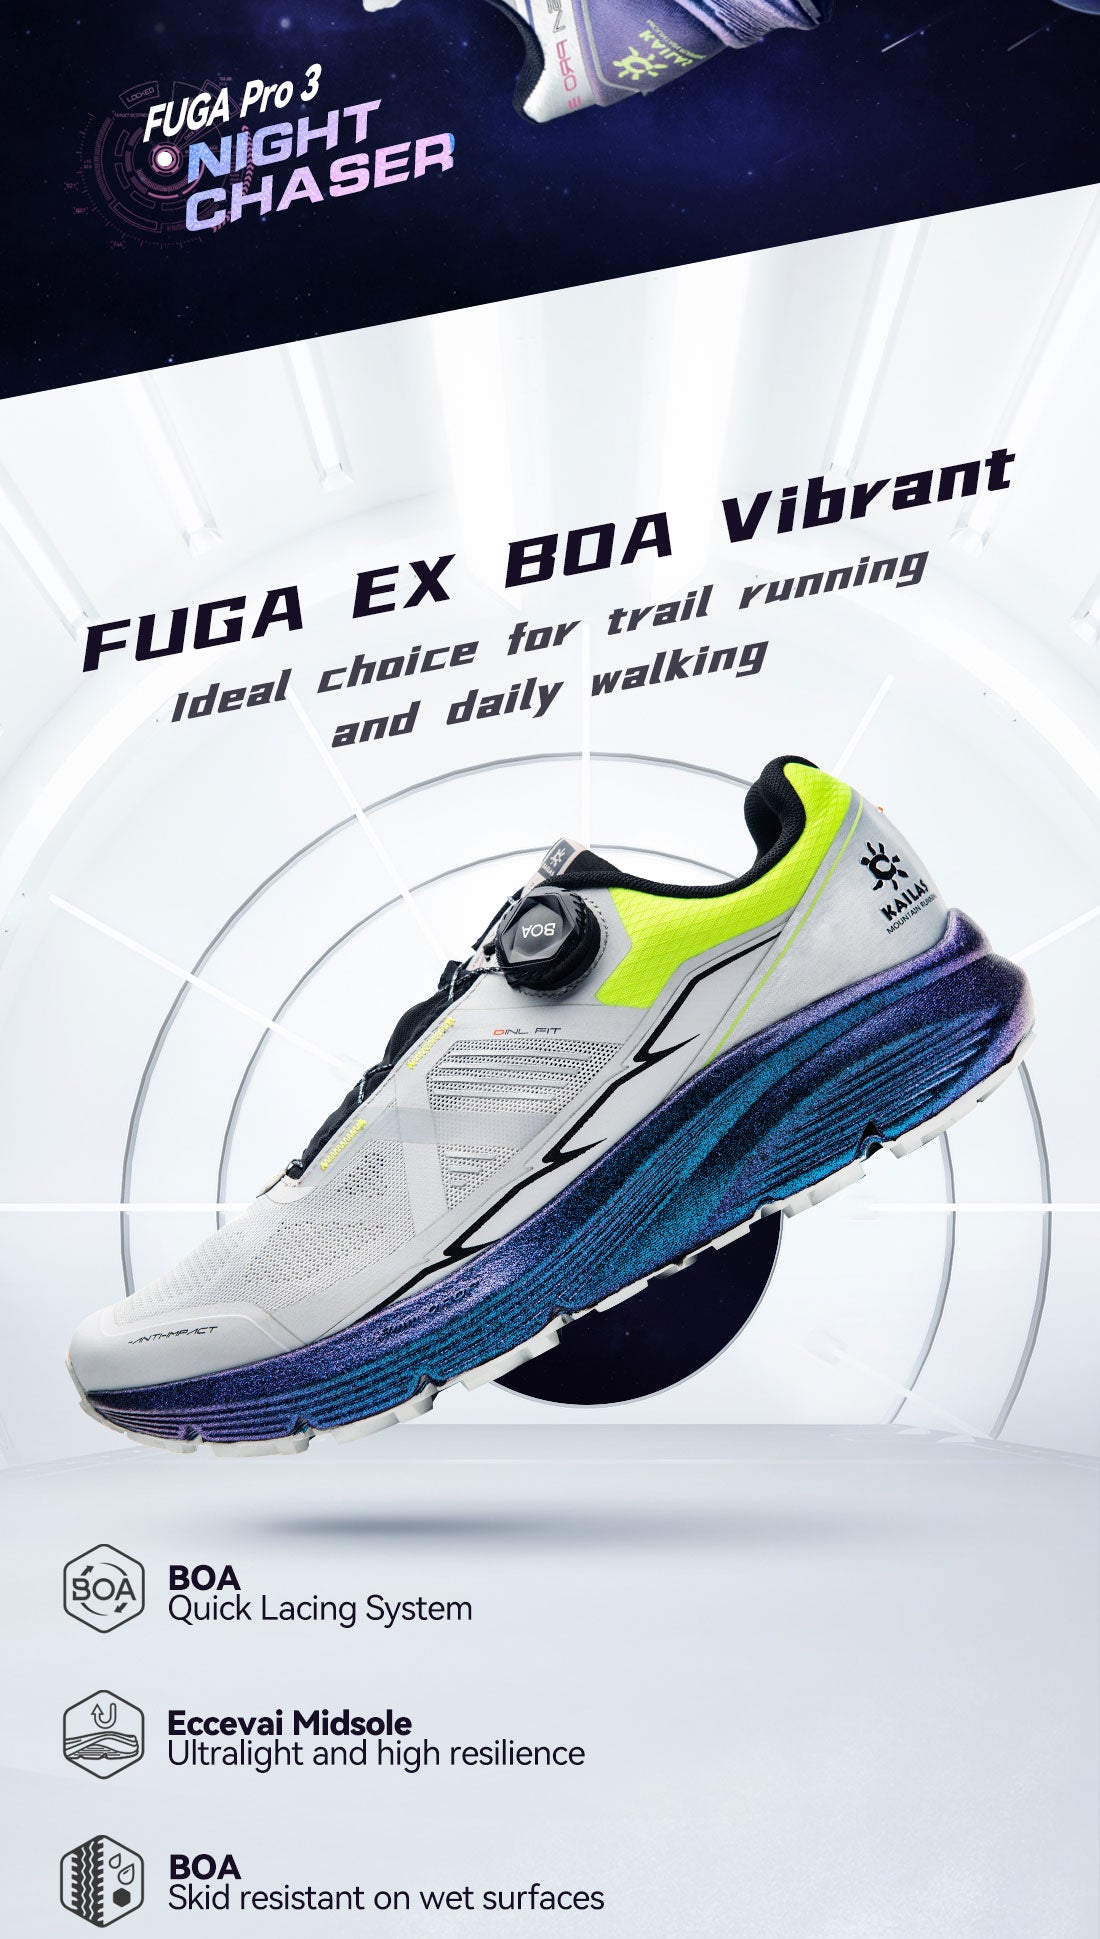 2. New color on FUGA EX BOA and FUGA Pro 3